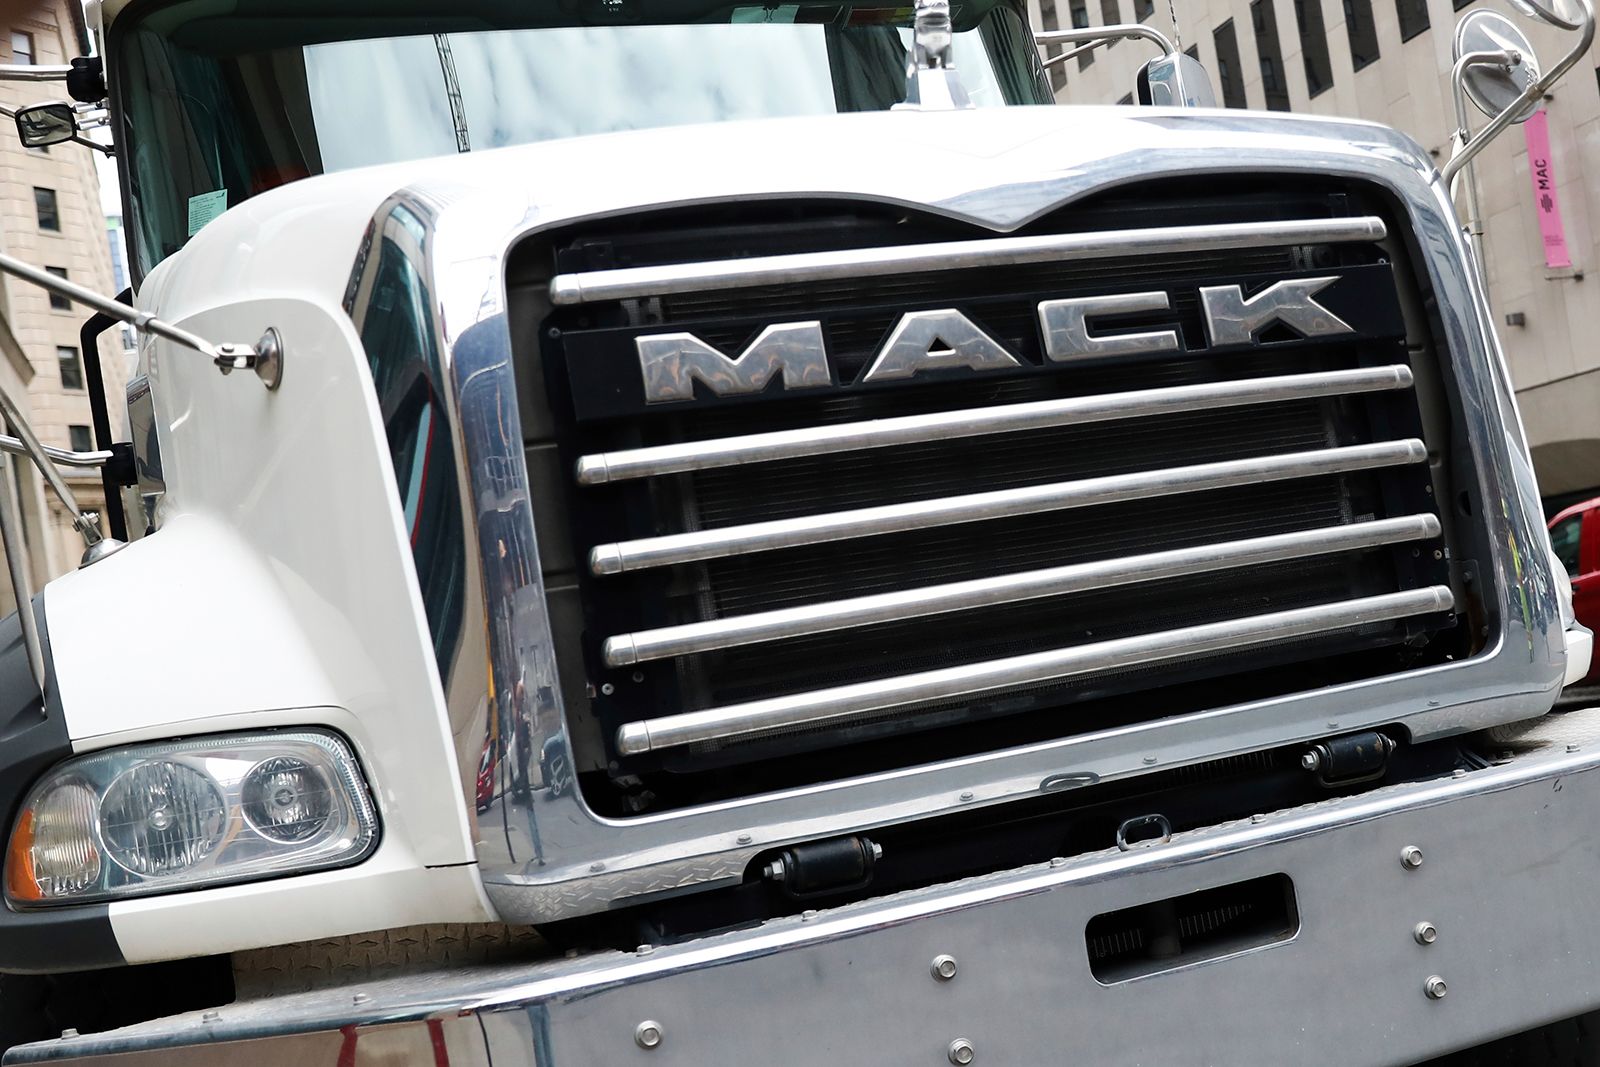 Mack Trucks strike narrowly avoided as company reaches tentative